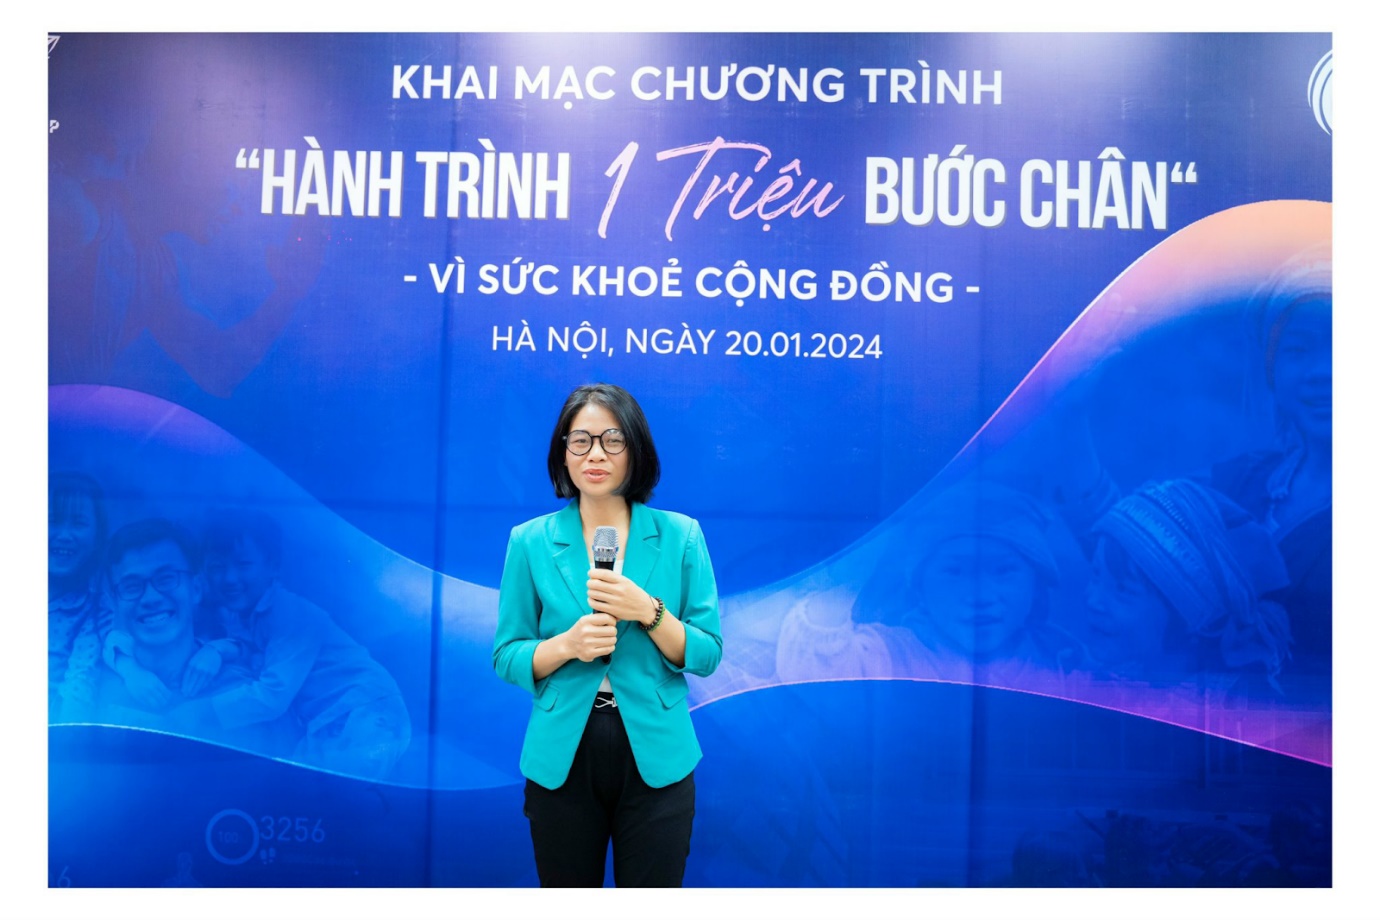 Tổ chức Doanh nhân GBN Việt Nam chia sẻ: “Chương trình hứa hẹn những giải thưởng hấp dẫn với tổng giá trị lên đến 150,000,000 VNĐ” (Ảnh: NVCC).